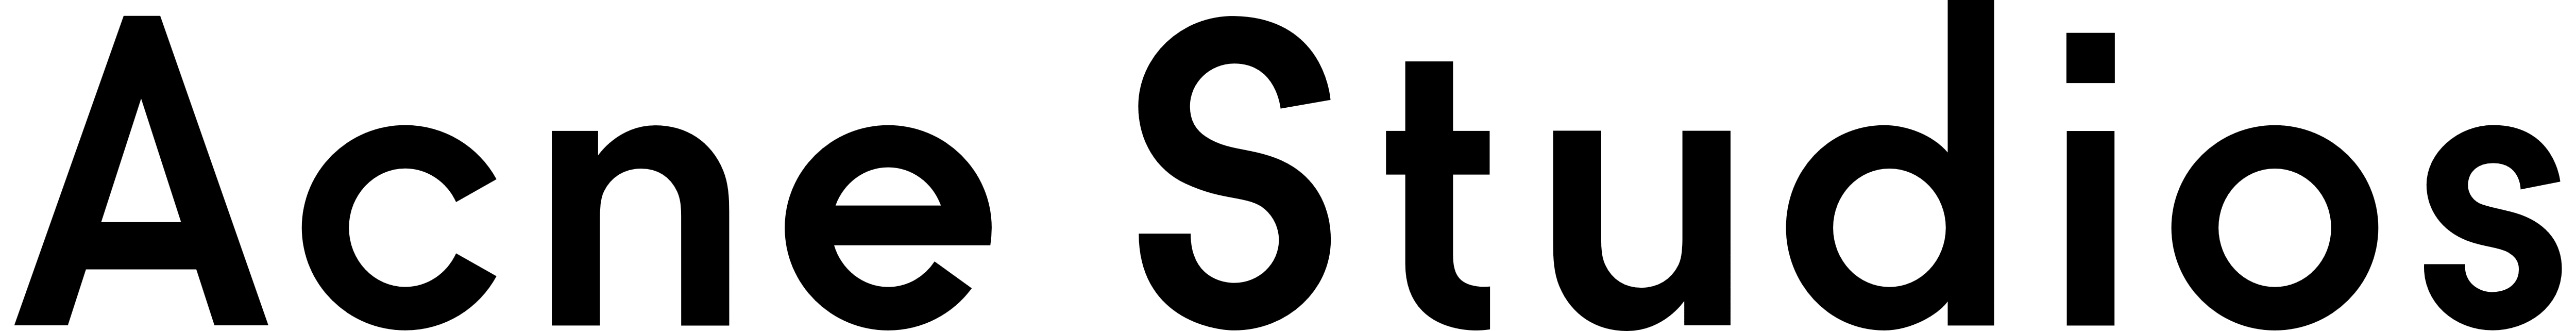 Acne Studios logo, logotype, textmark